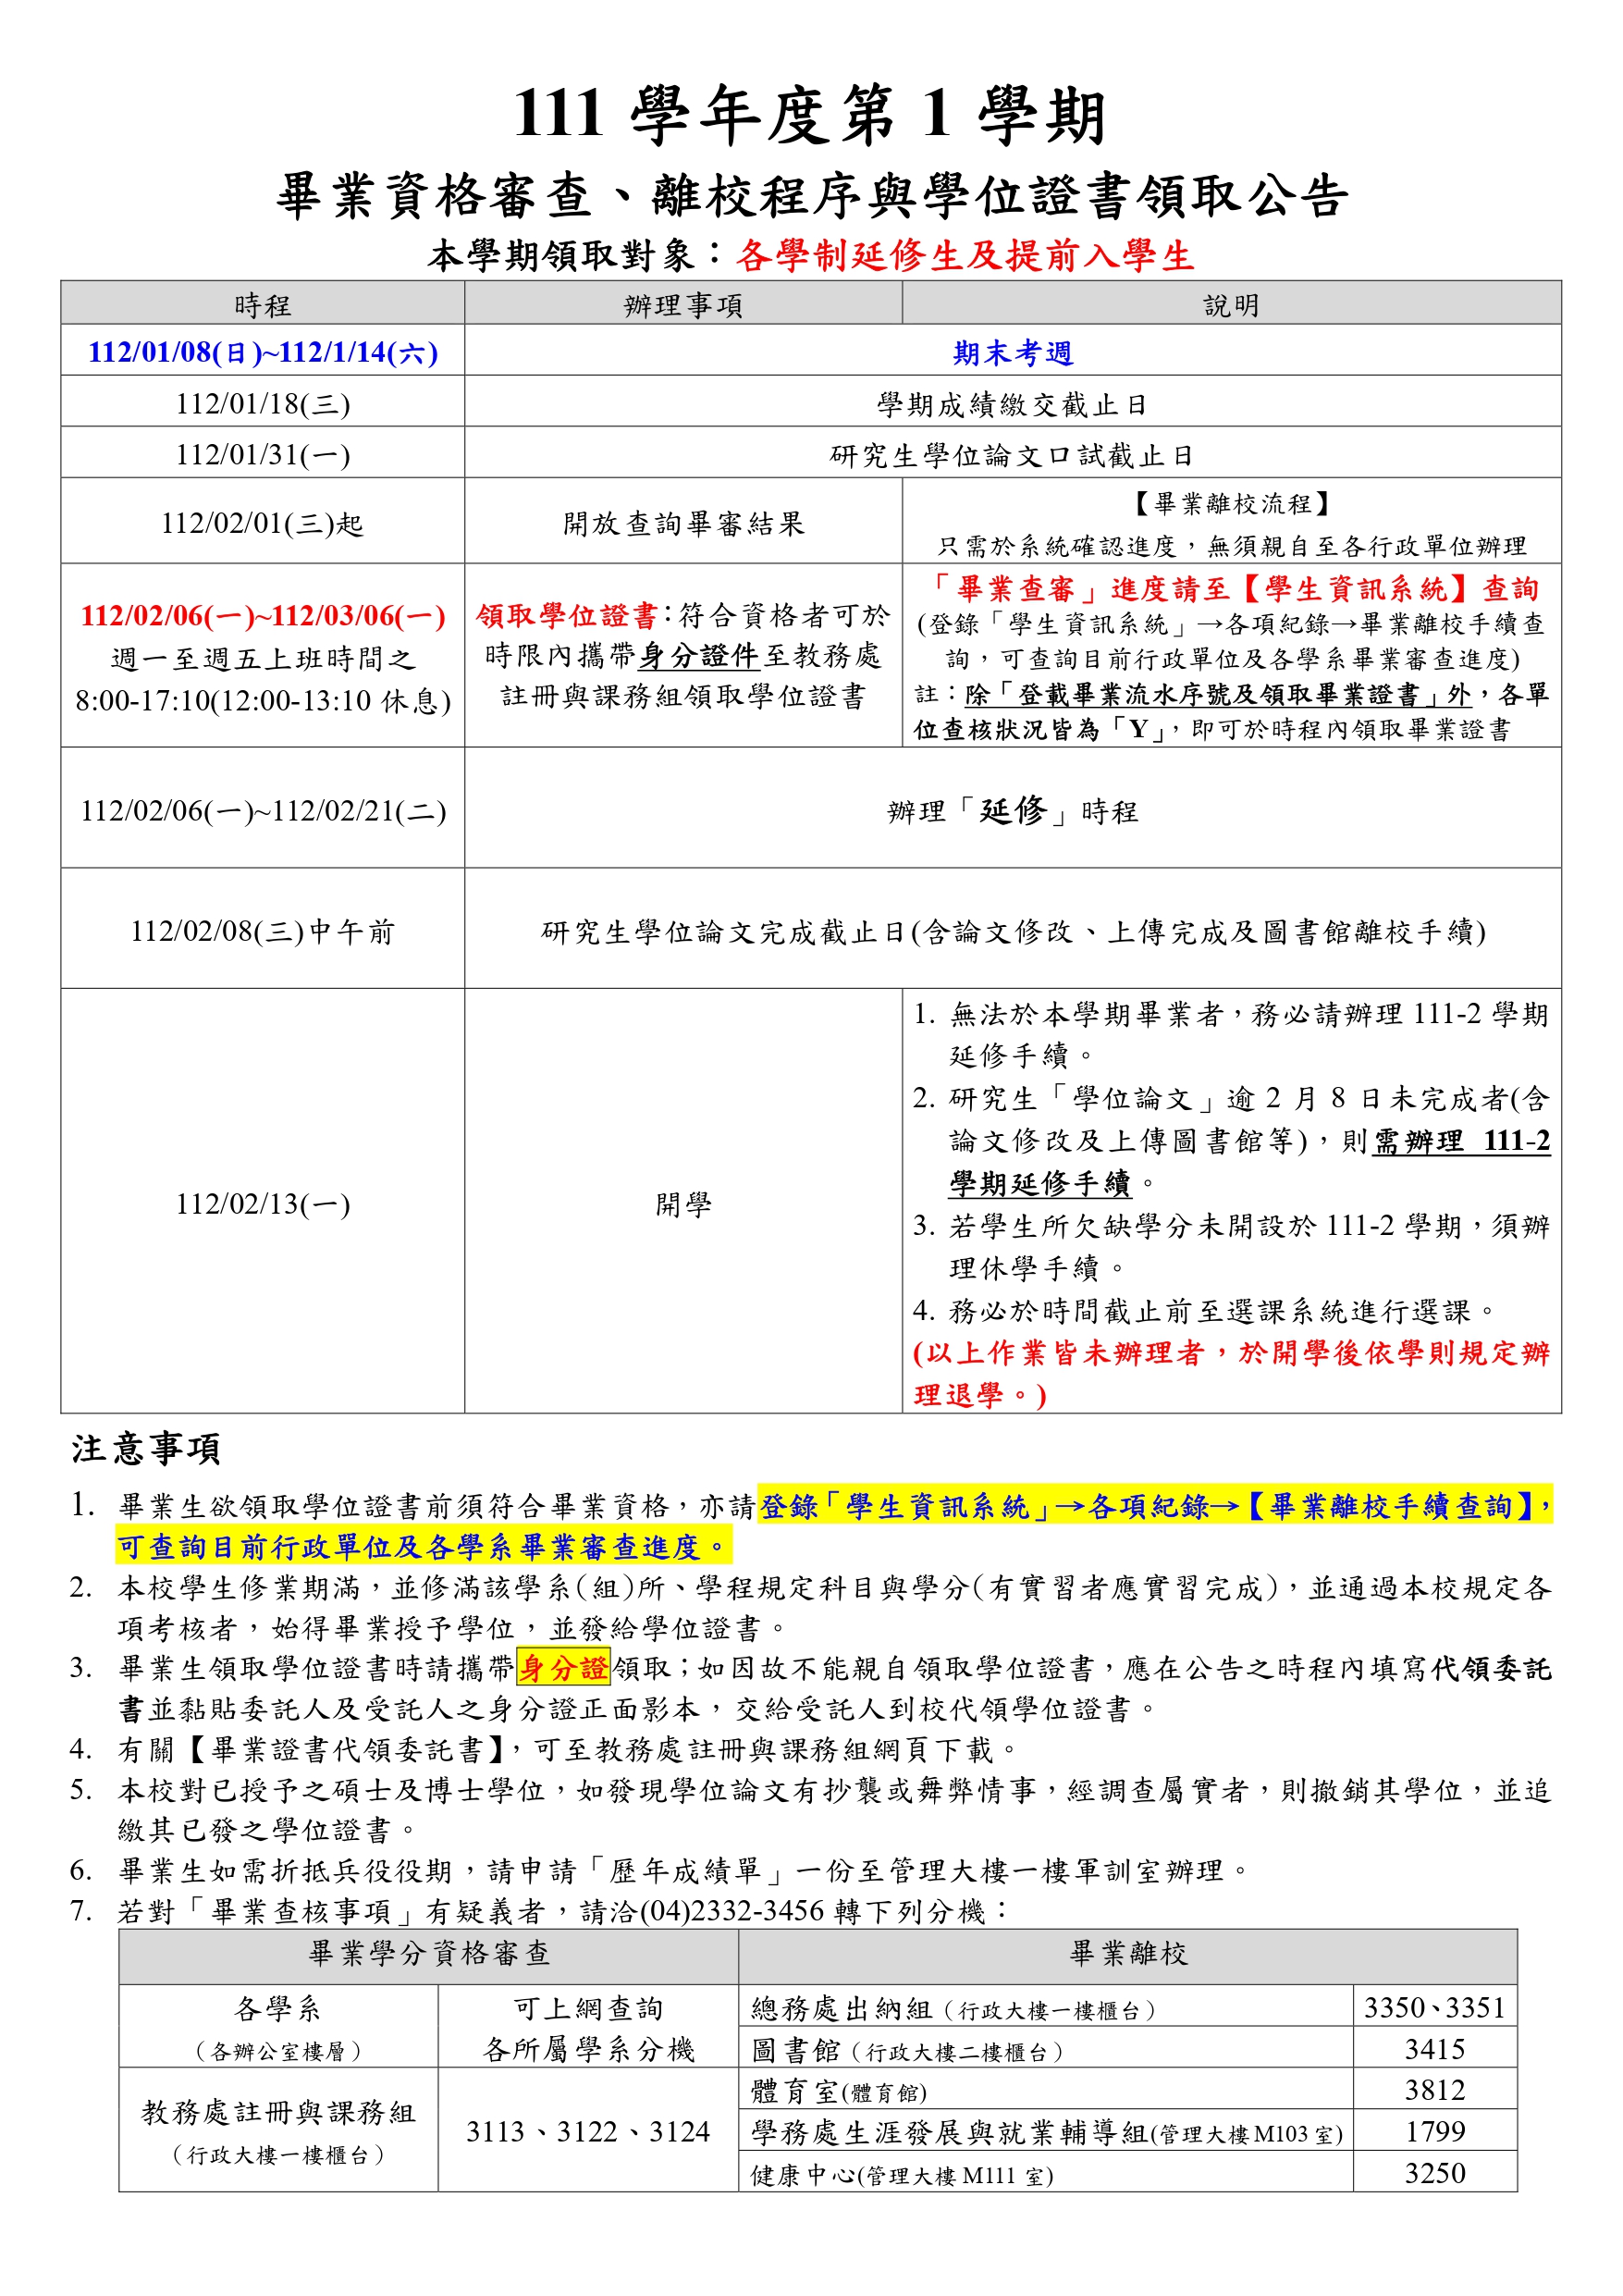 附件一111-1畢審&領取證書時程-公告_page-0001